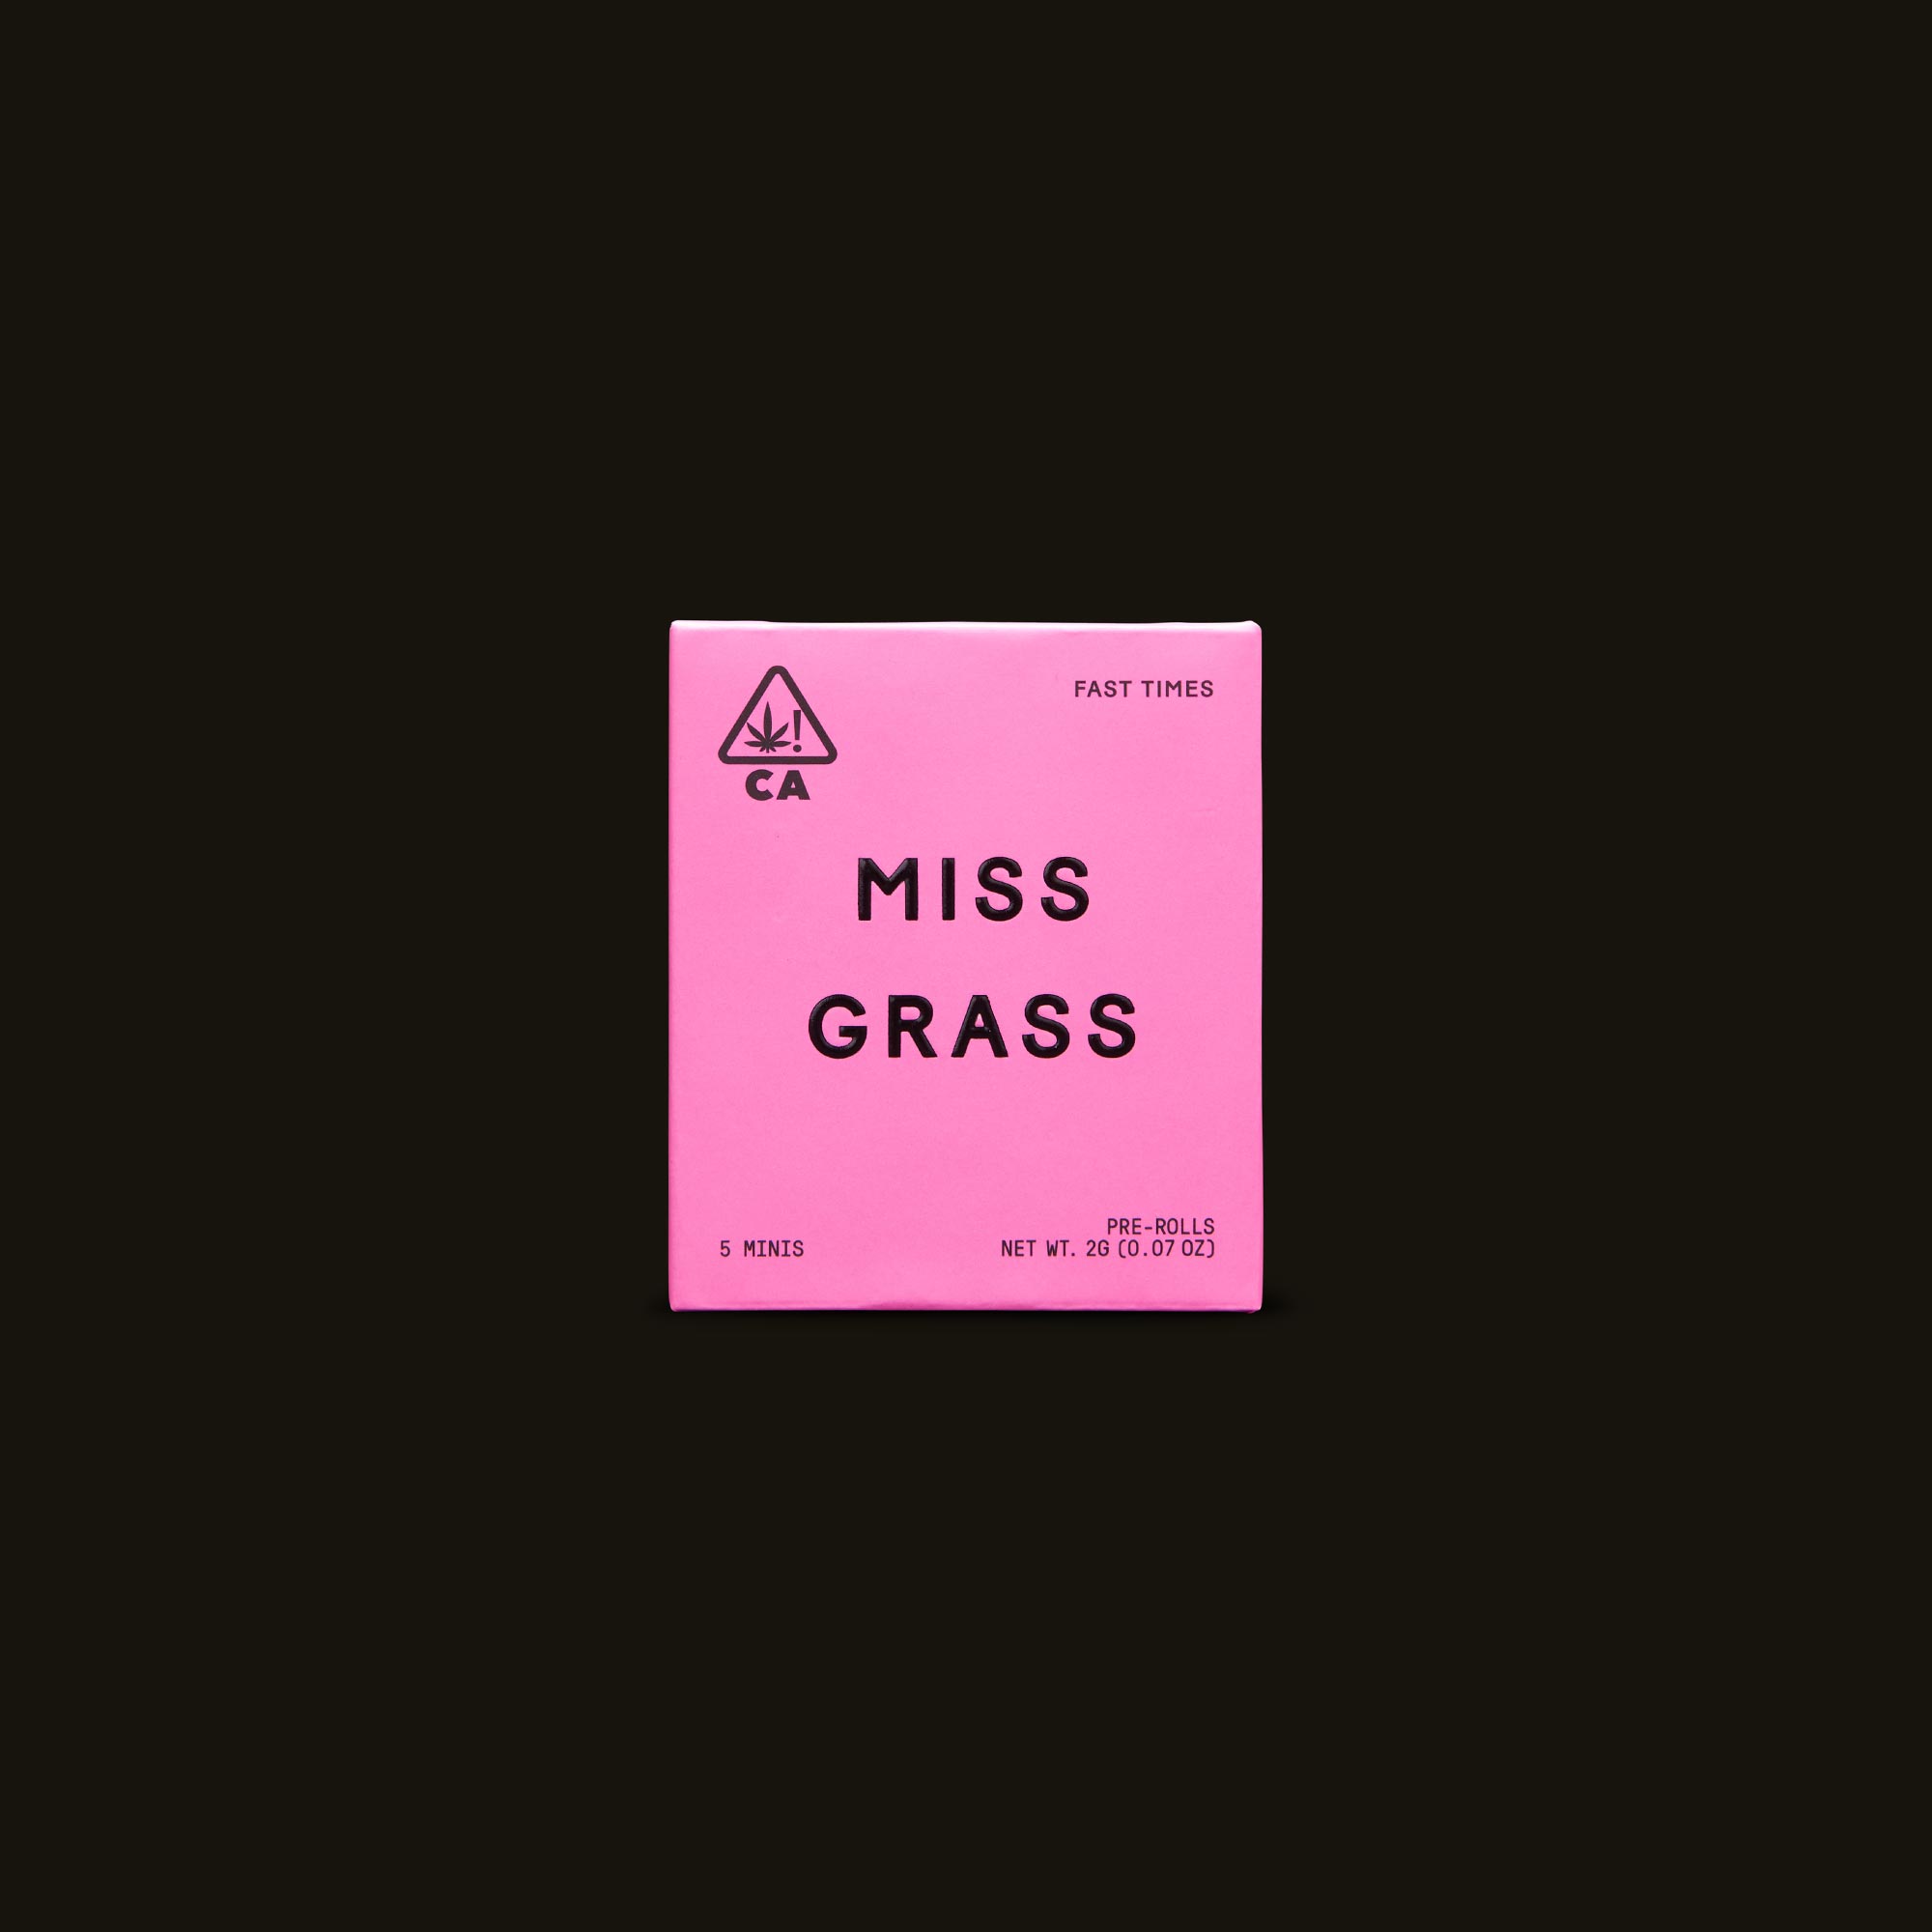 Miss-Grass-Miss-Grass-Minis-Fast-Times0167-1-1105541